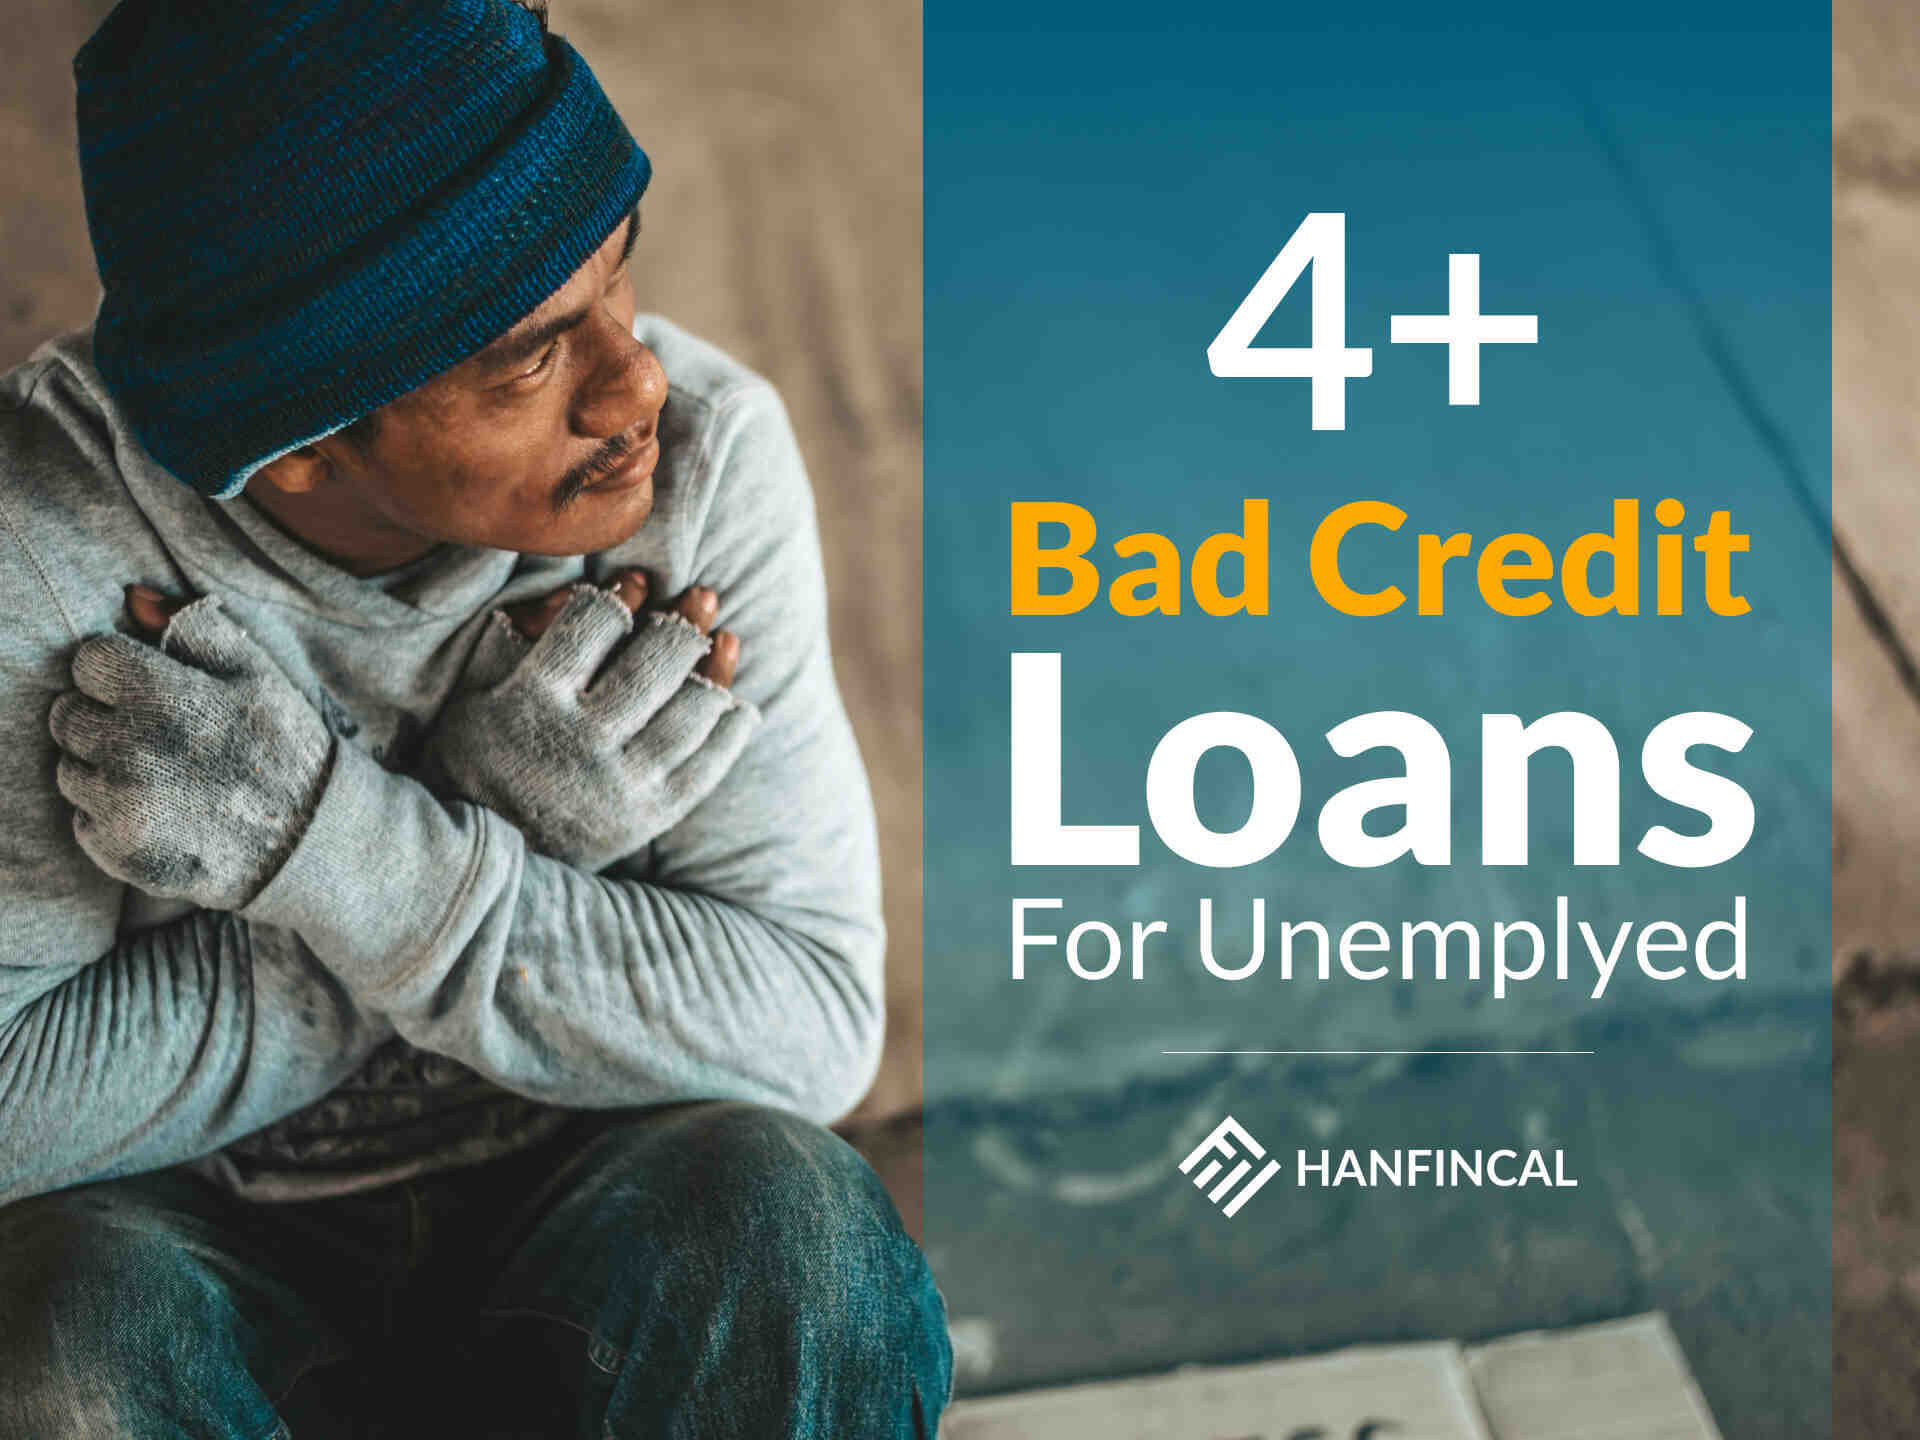 Comment faire une demande de crédit quand on est au chômage ?